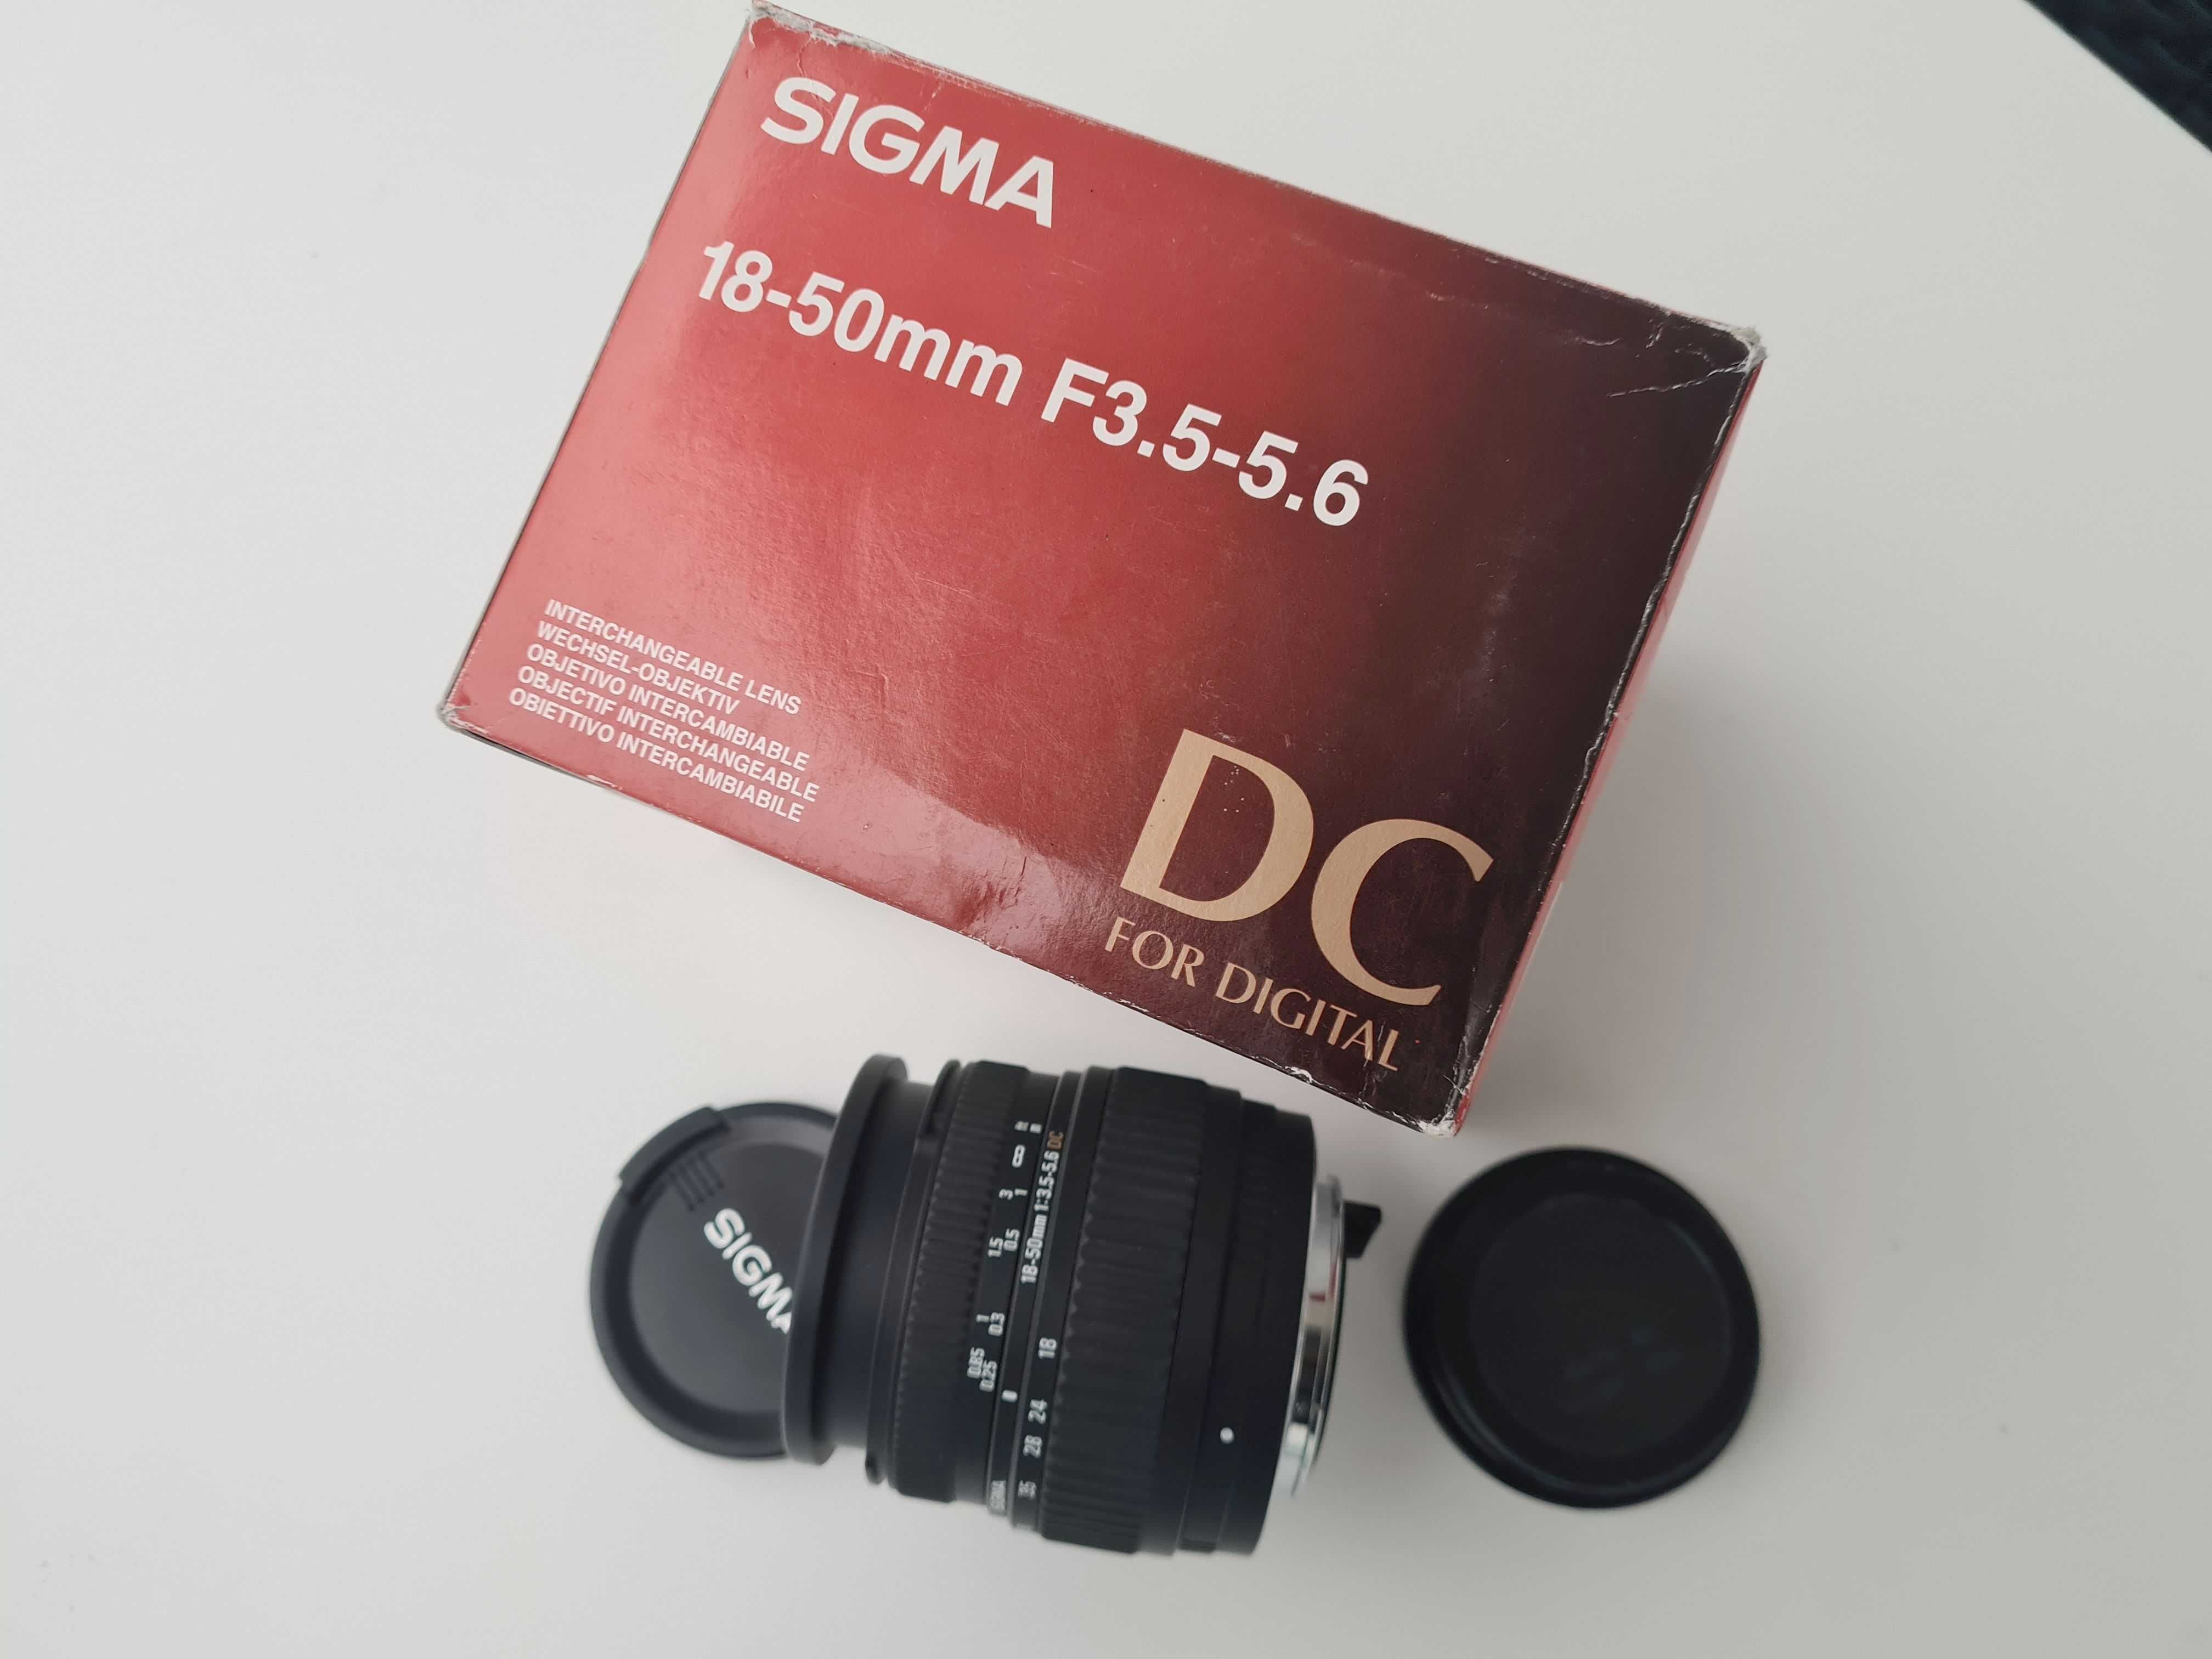 .Obiektyw Sigma 18-50mm 1:3.5-5.6 DC do Pentax